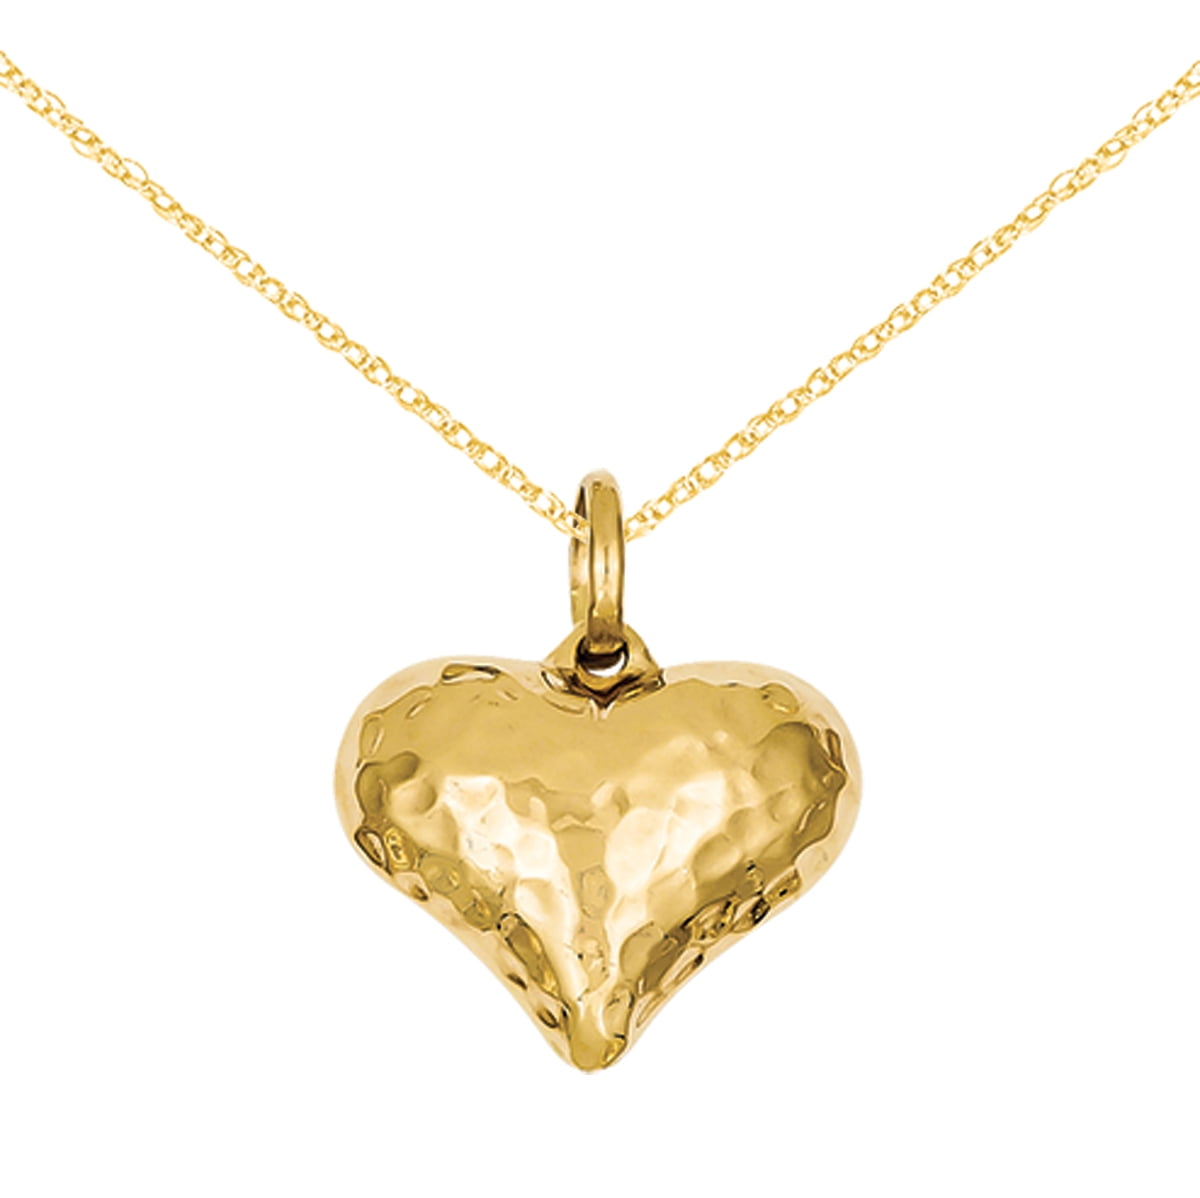 Gold heart chain